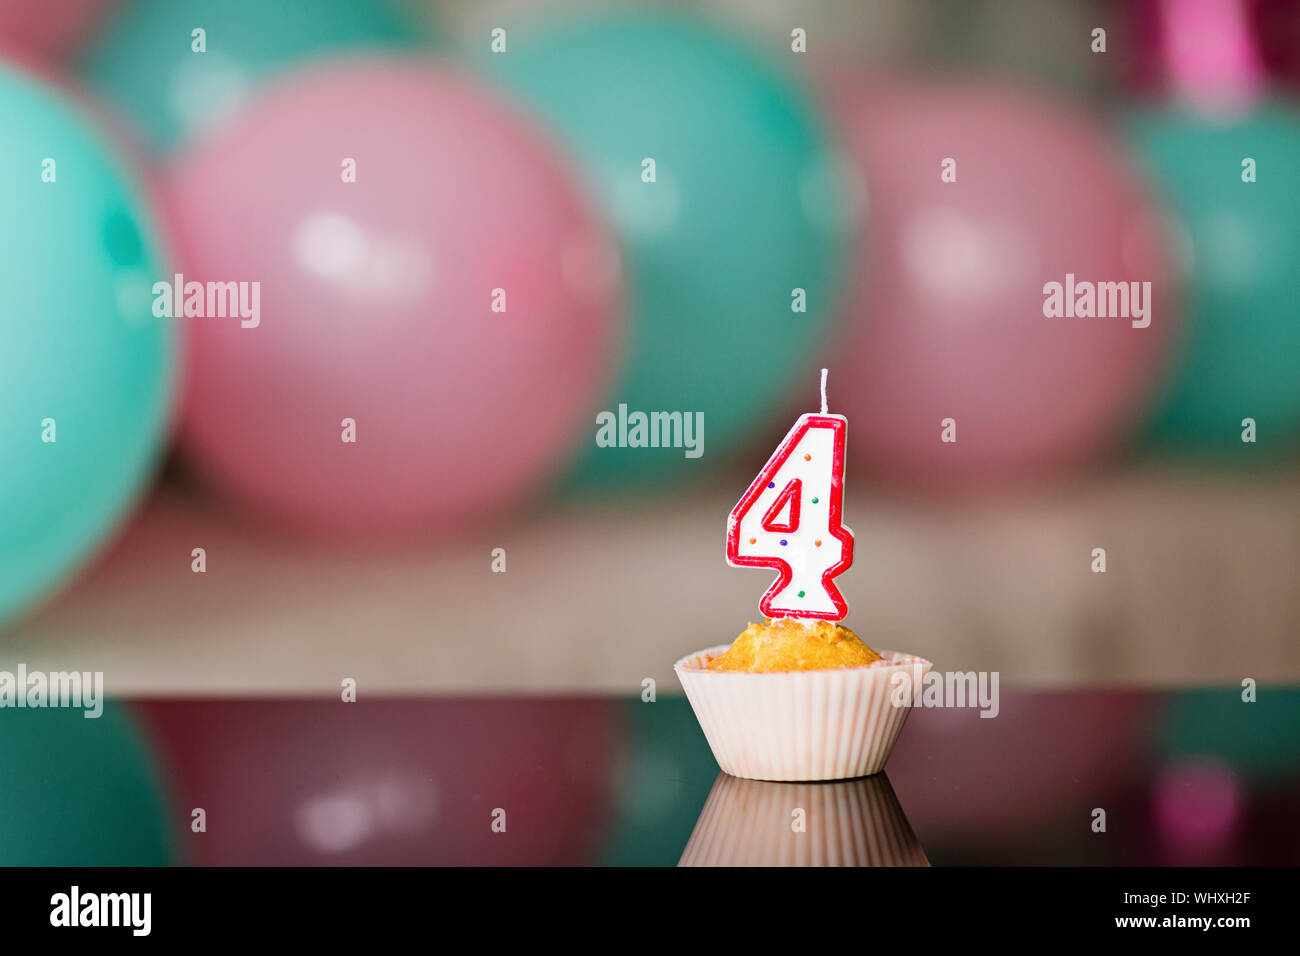 https://c8.alamy.com/compfr/whxh2f/gateau-d-anniversaire-et-de-ballons-colores-sur-fond-celebrer-4-ans-whxh2f.jpg